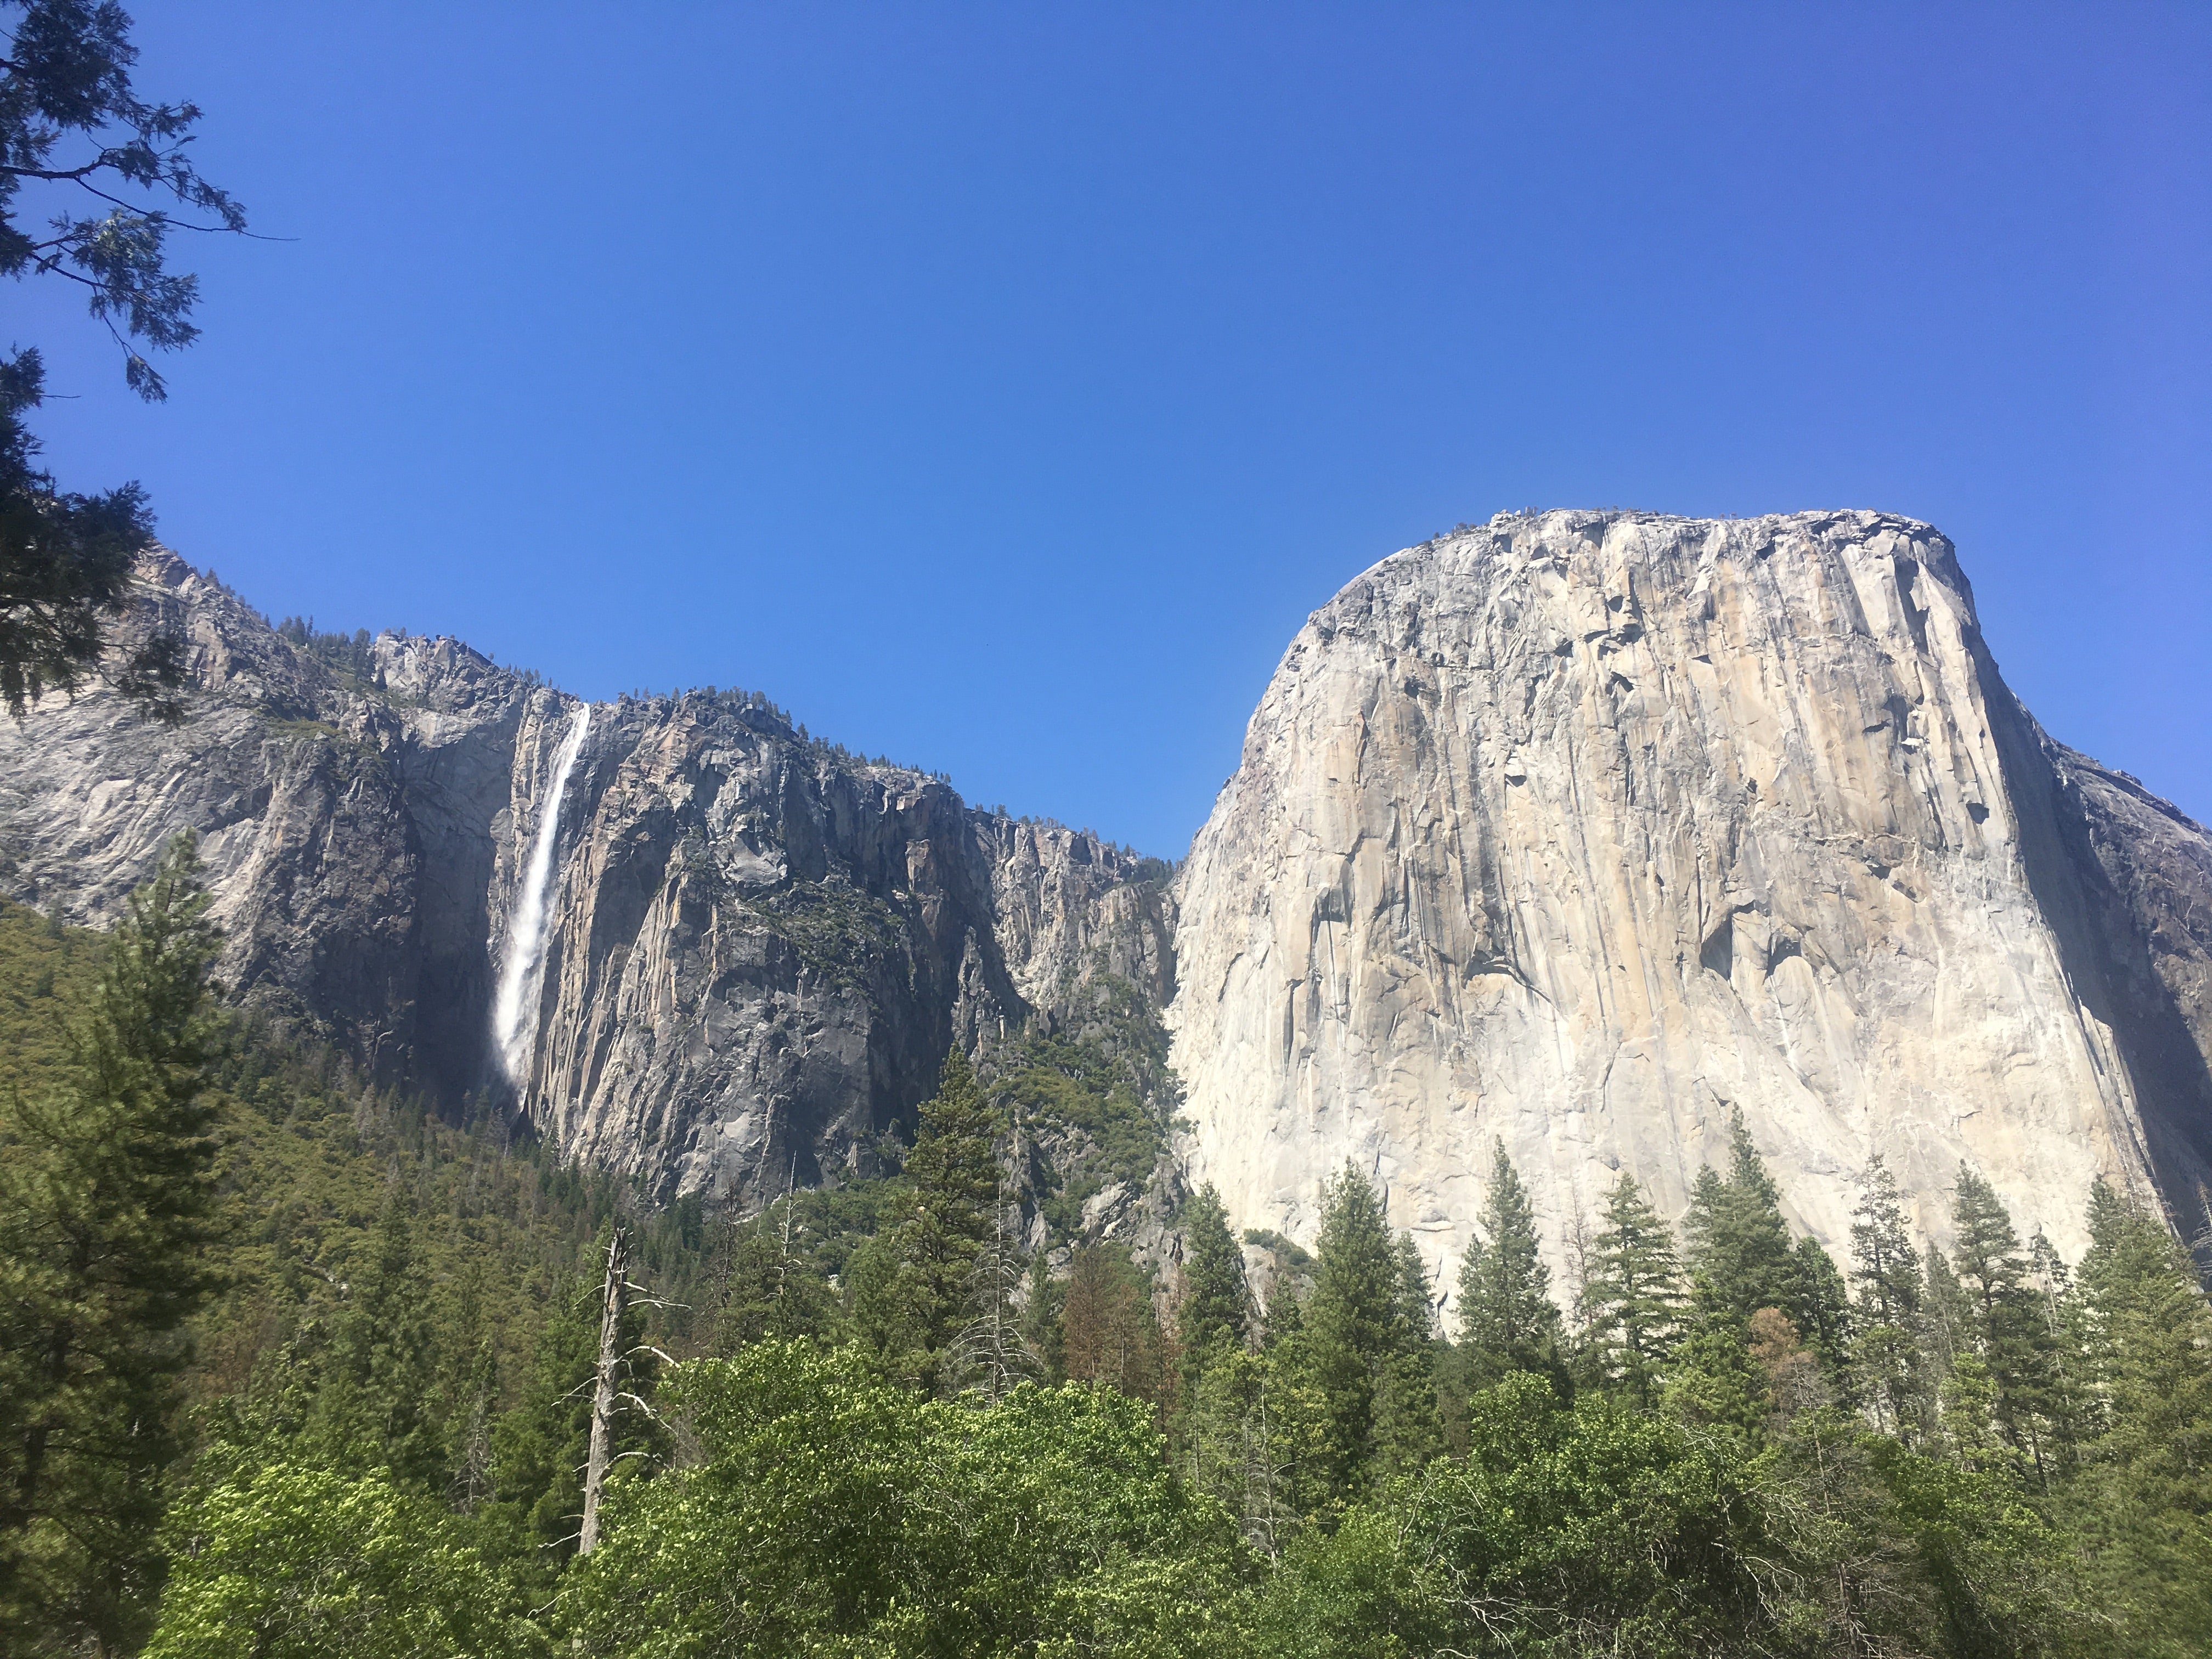 Yosemite’s glory